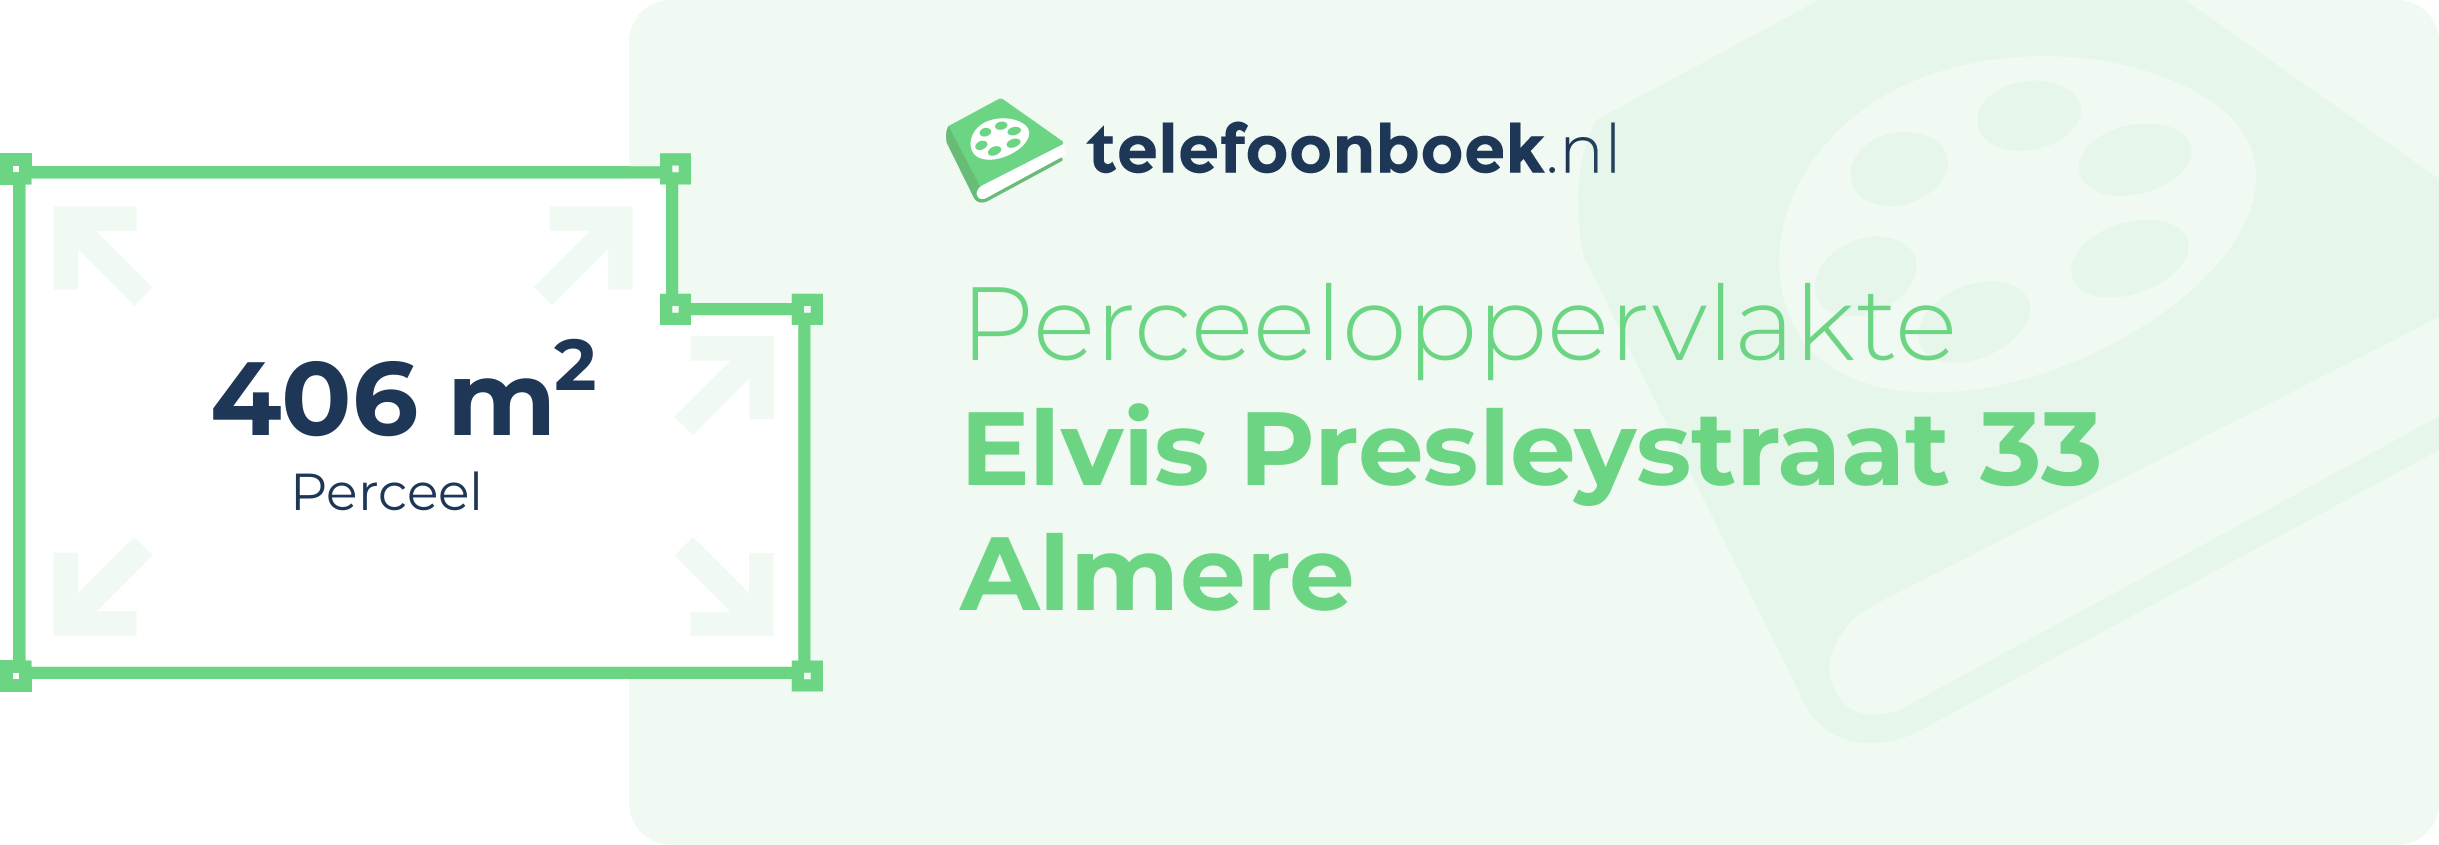 Perceeloppervlakte Elvis Presleystraat 33 Almere